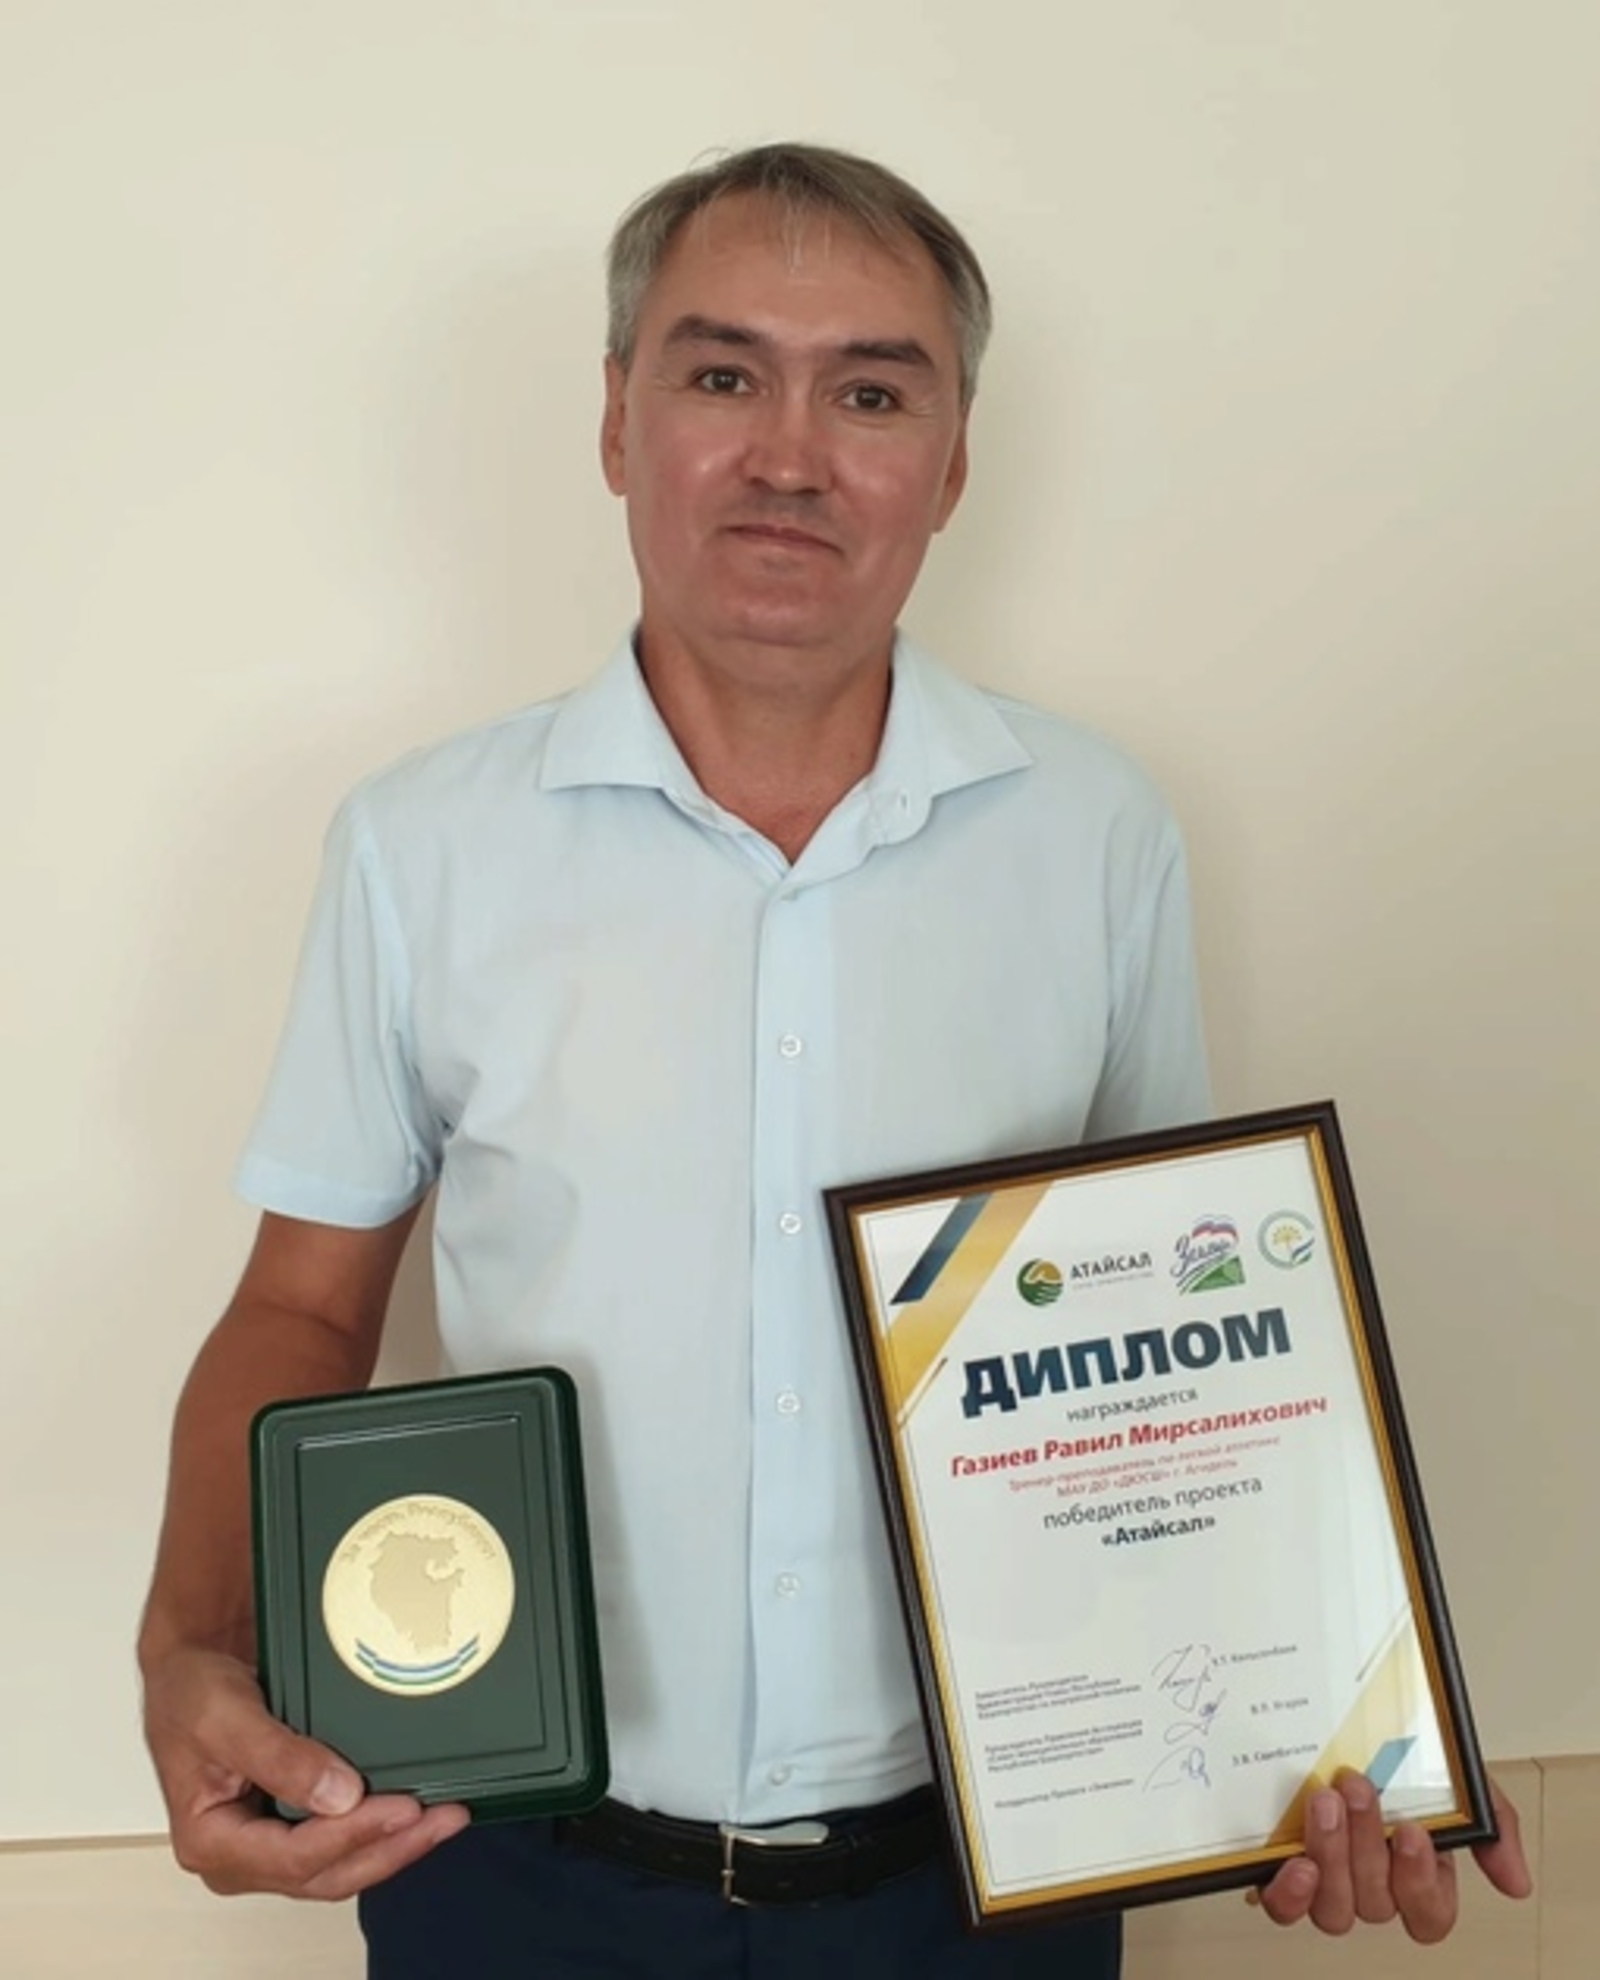 Тренер из Агидели получил награду всероссийского уровня